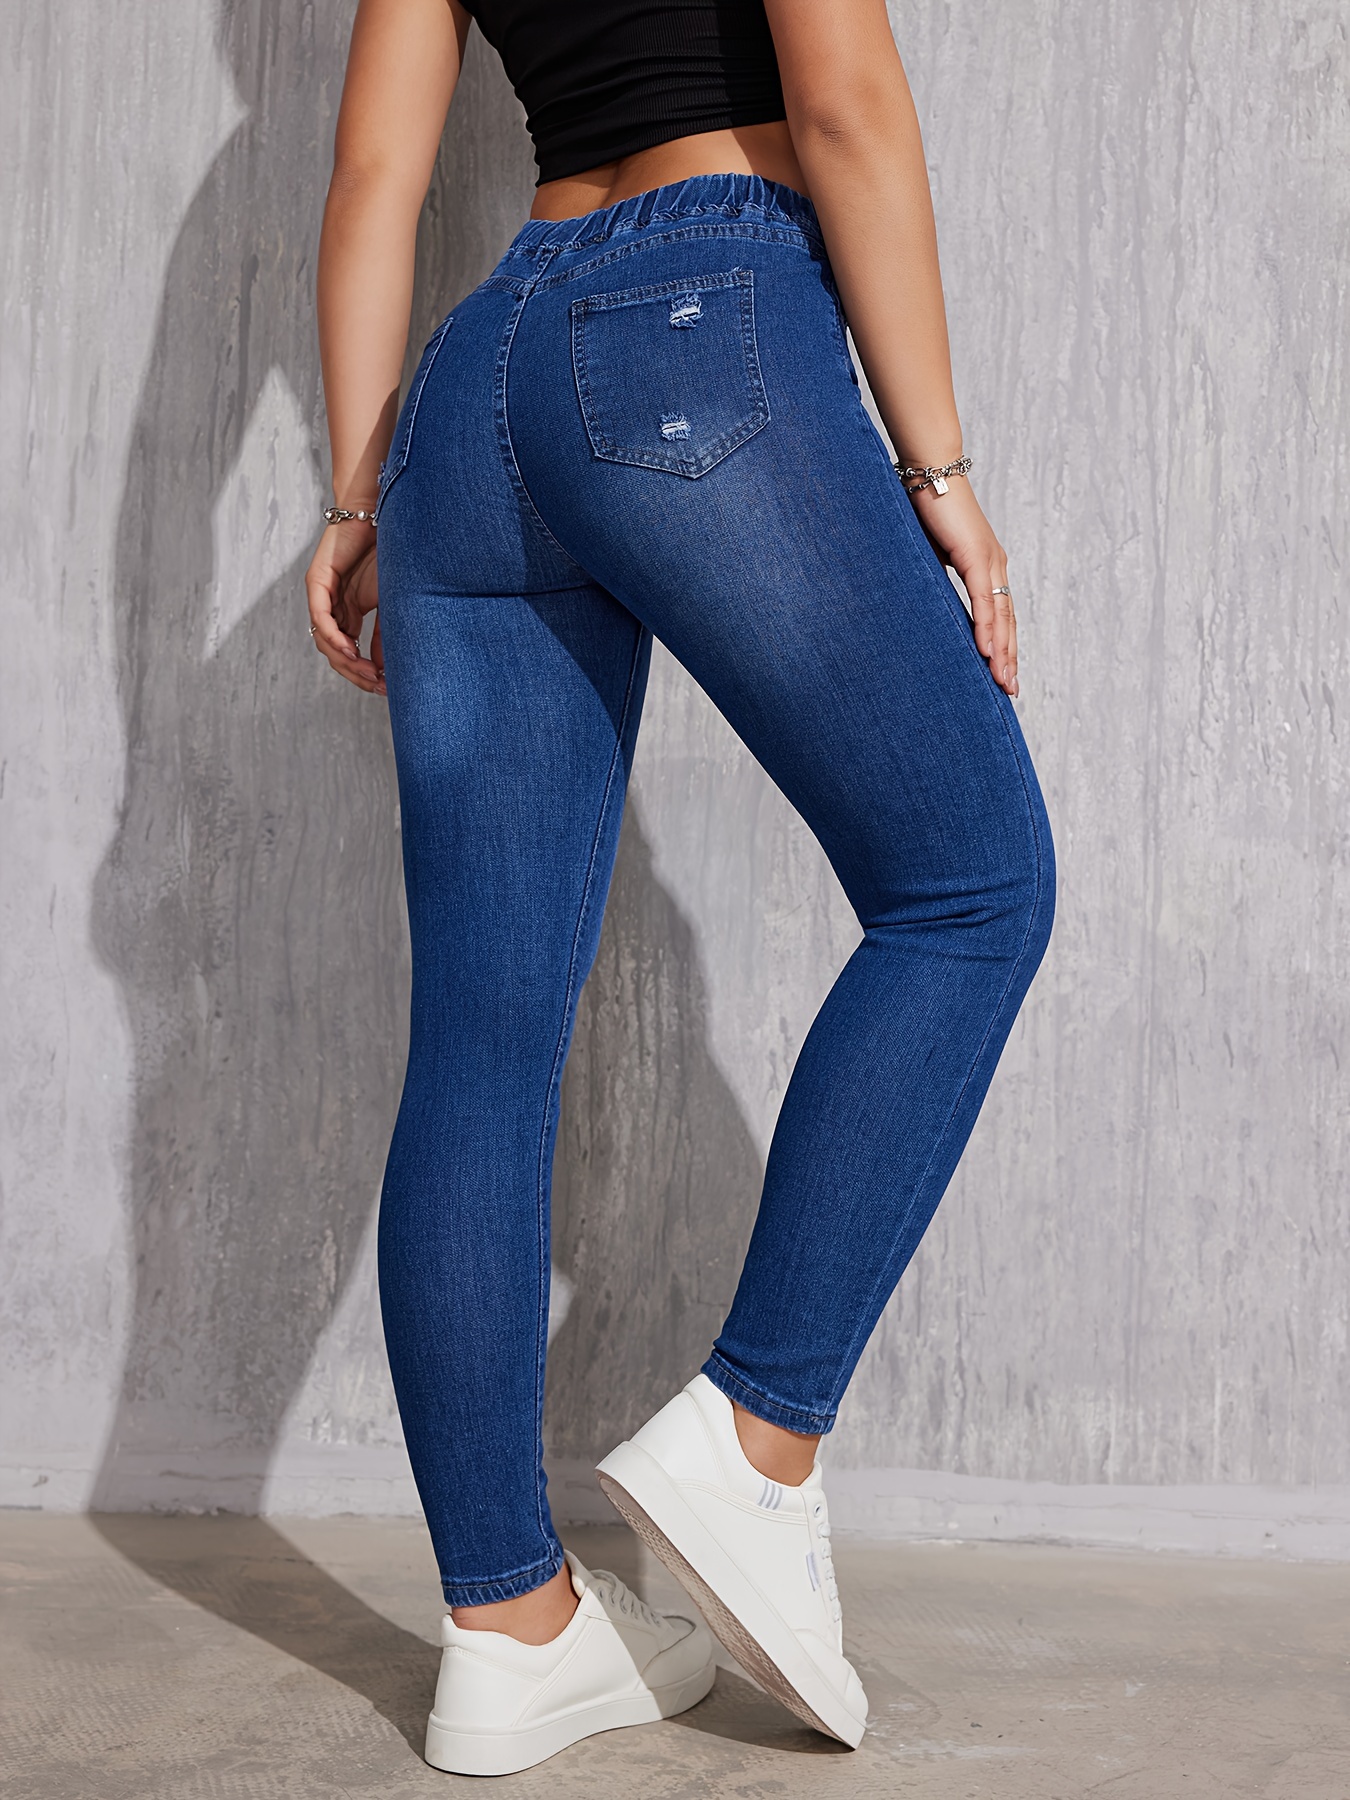  Jeans ajustados para mujer, cintura alta, elásticos y